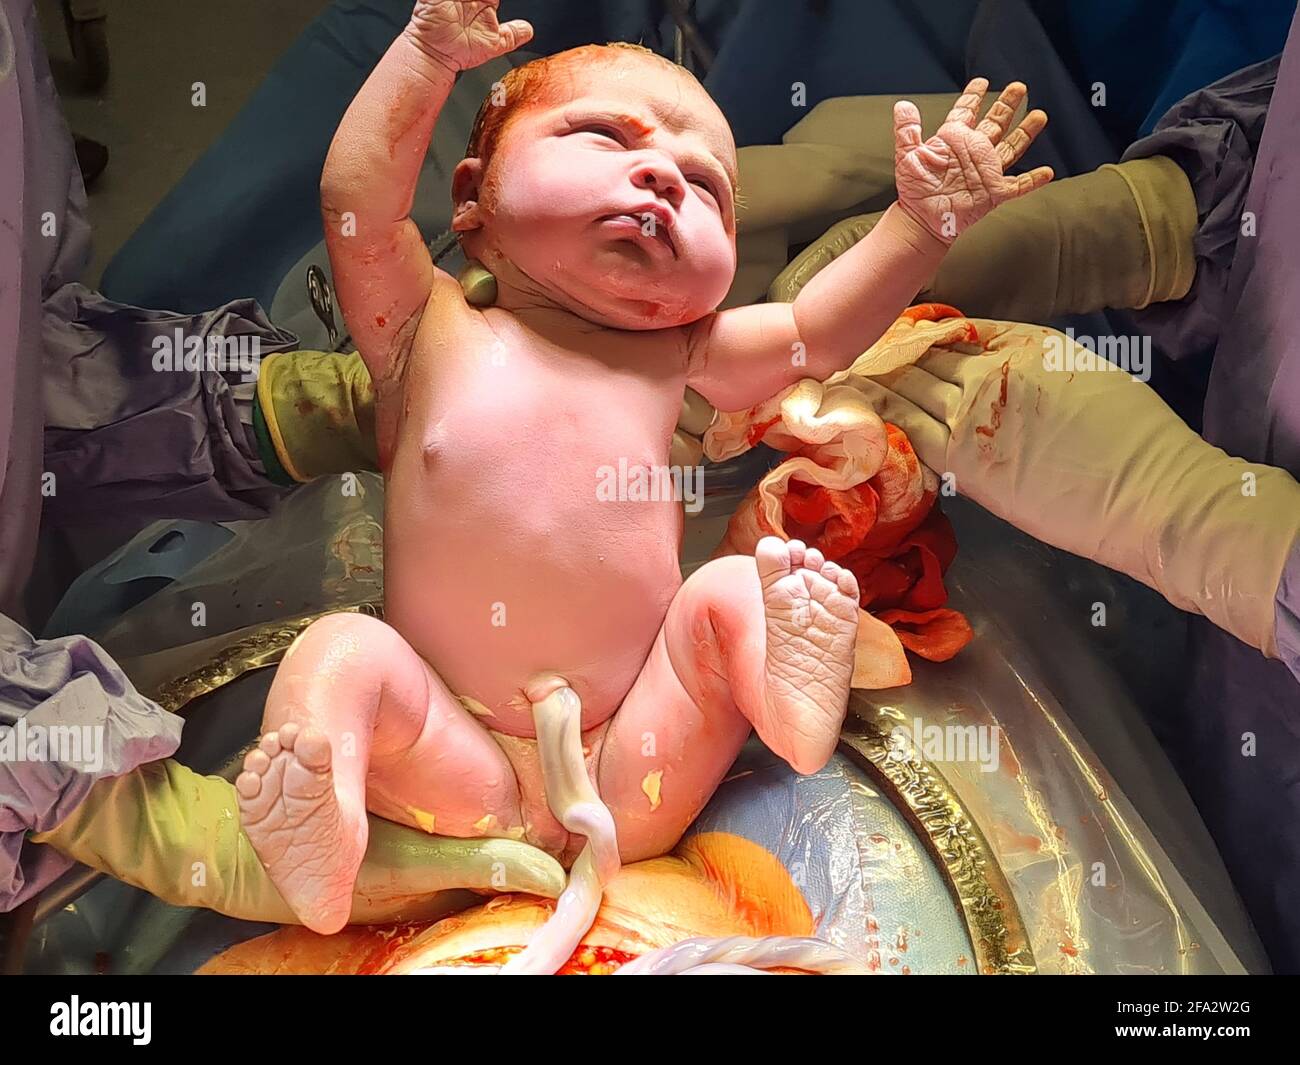 AUCKLAND, NUOVA ZELANDA - 13 aprile 2021: Una bambina neonato illuminata da luci chirurgiche ha le mani in su, e gli occhi aperti come è appena stata tirata f Foto Stock